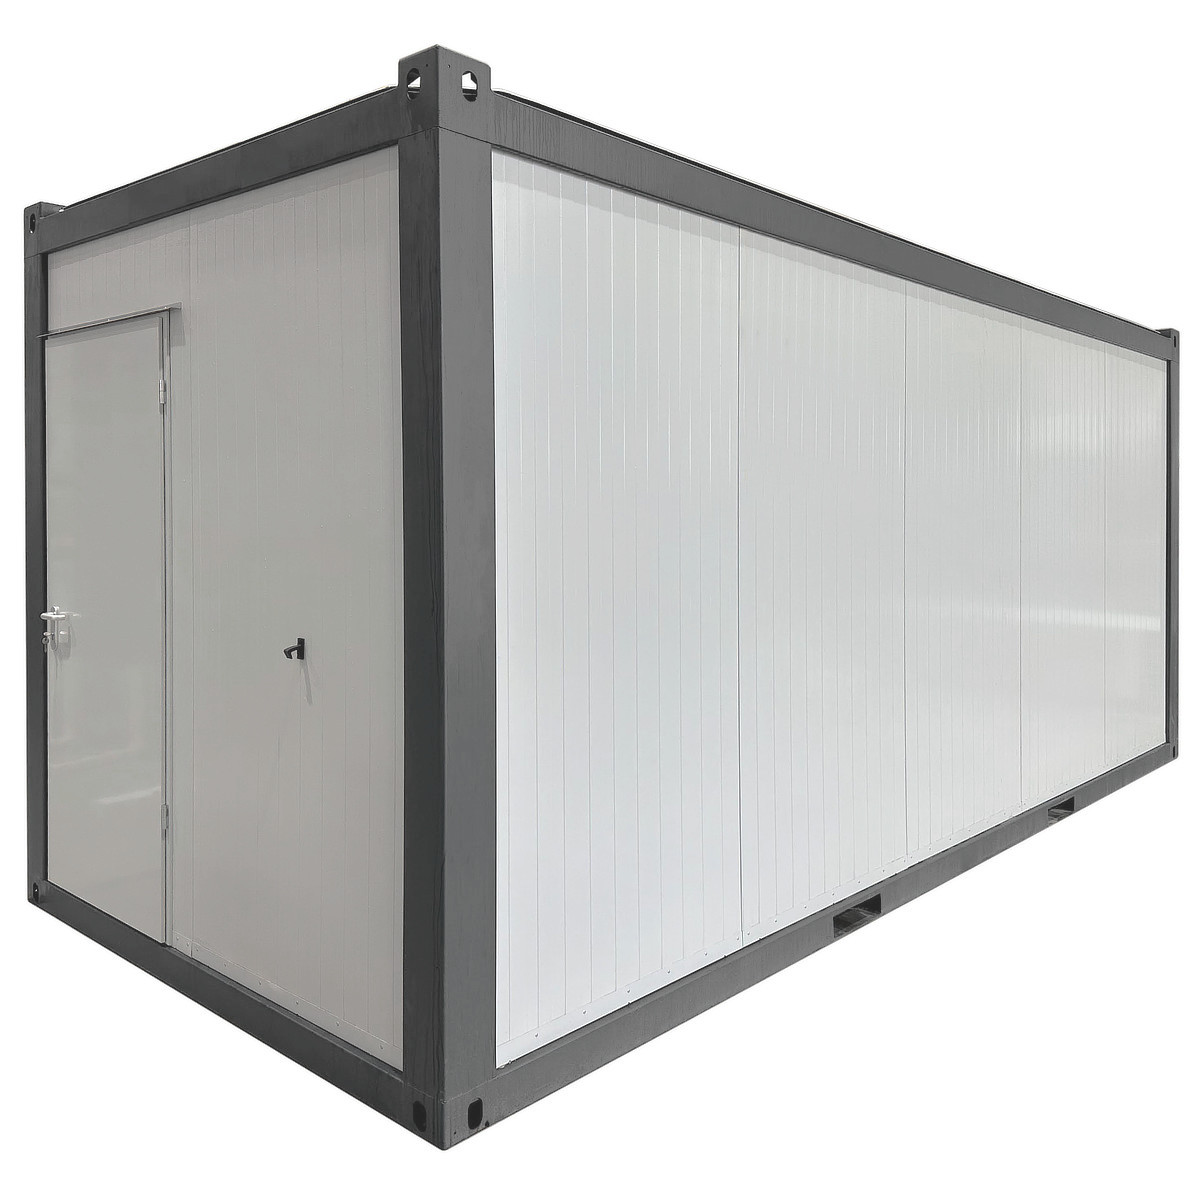 Neuer Raum- und Bürocontainer 6x2,4m - economy.line